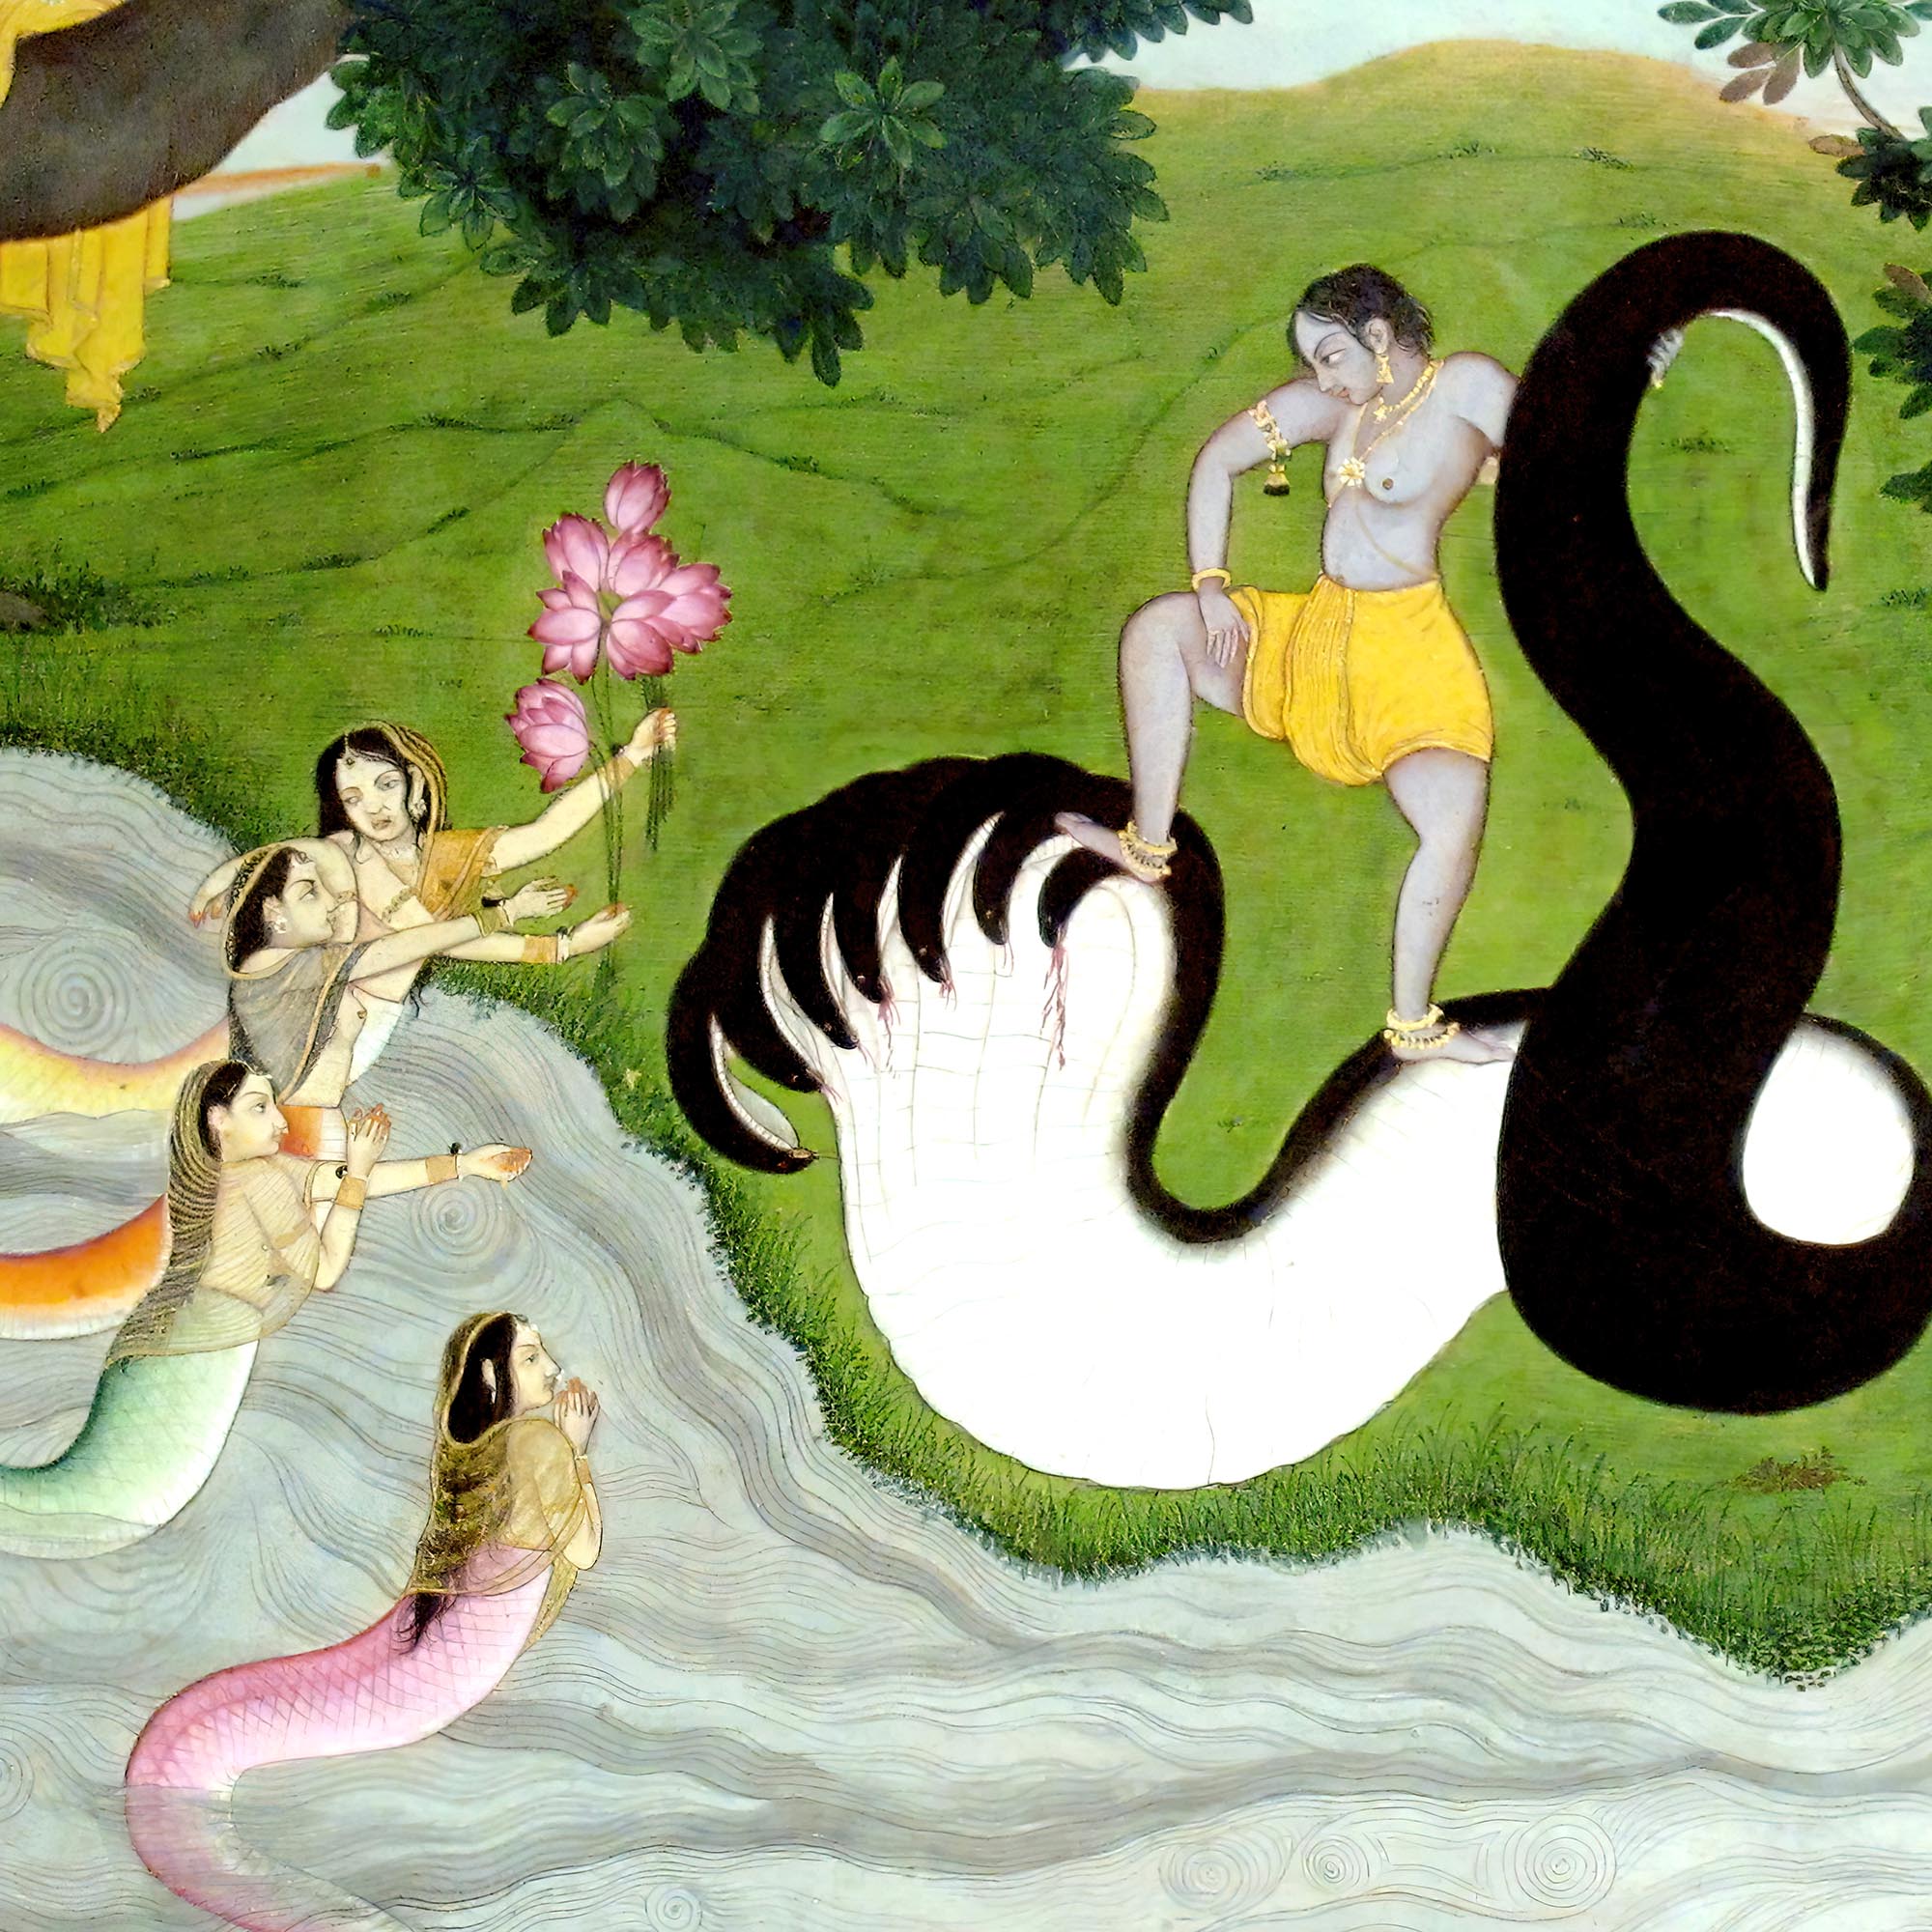 giclee 8"x6" Nagas Mythology: Krishna Fights King of the Nagas, Kaliya | Hindu Mythology, Folklore Fine Art Print